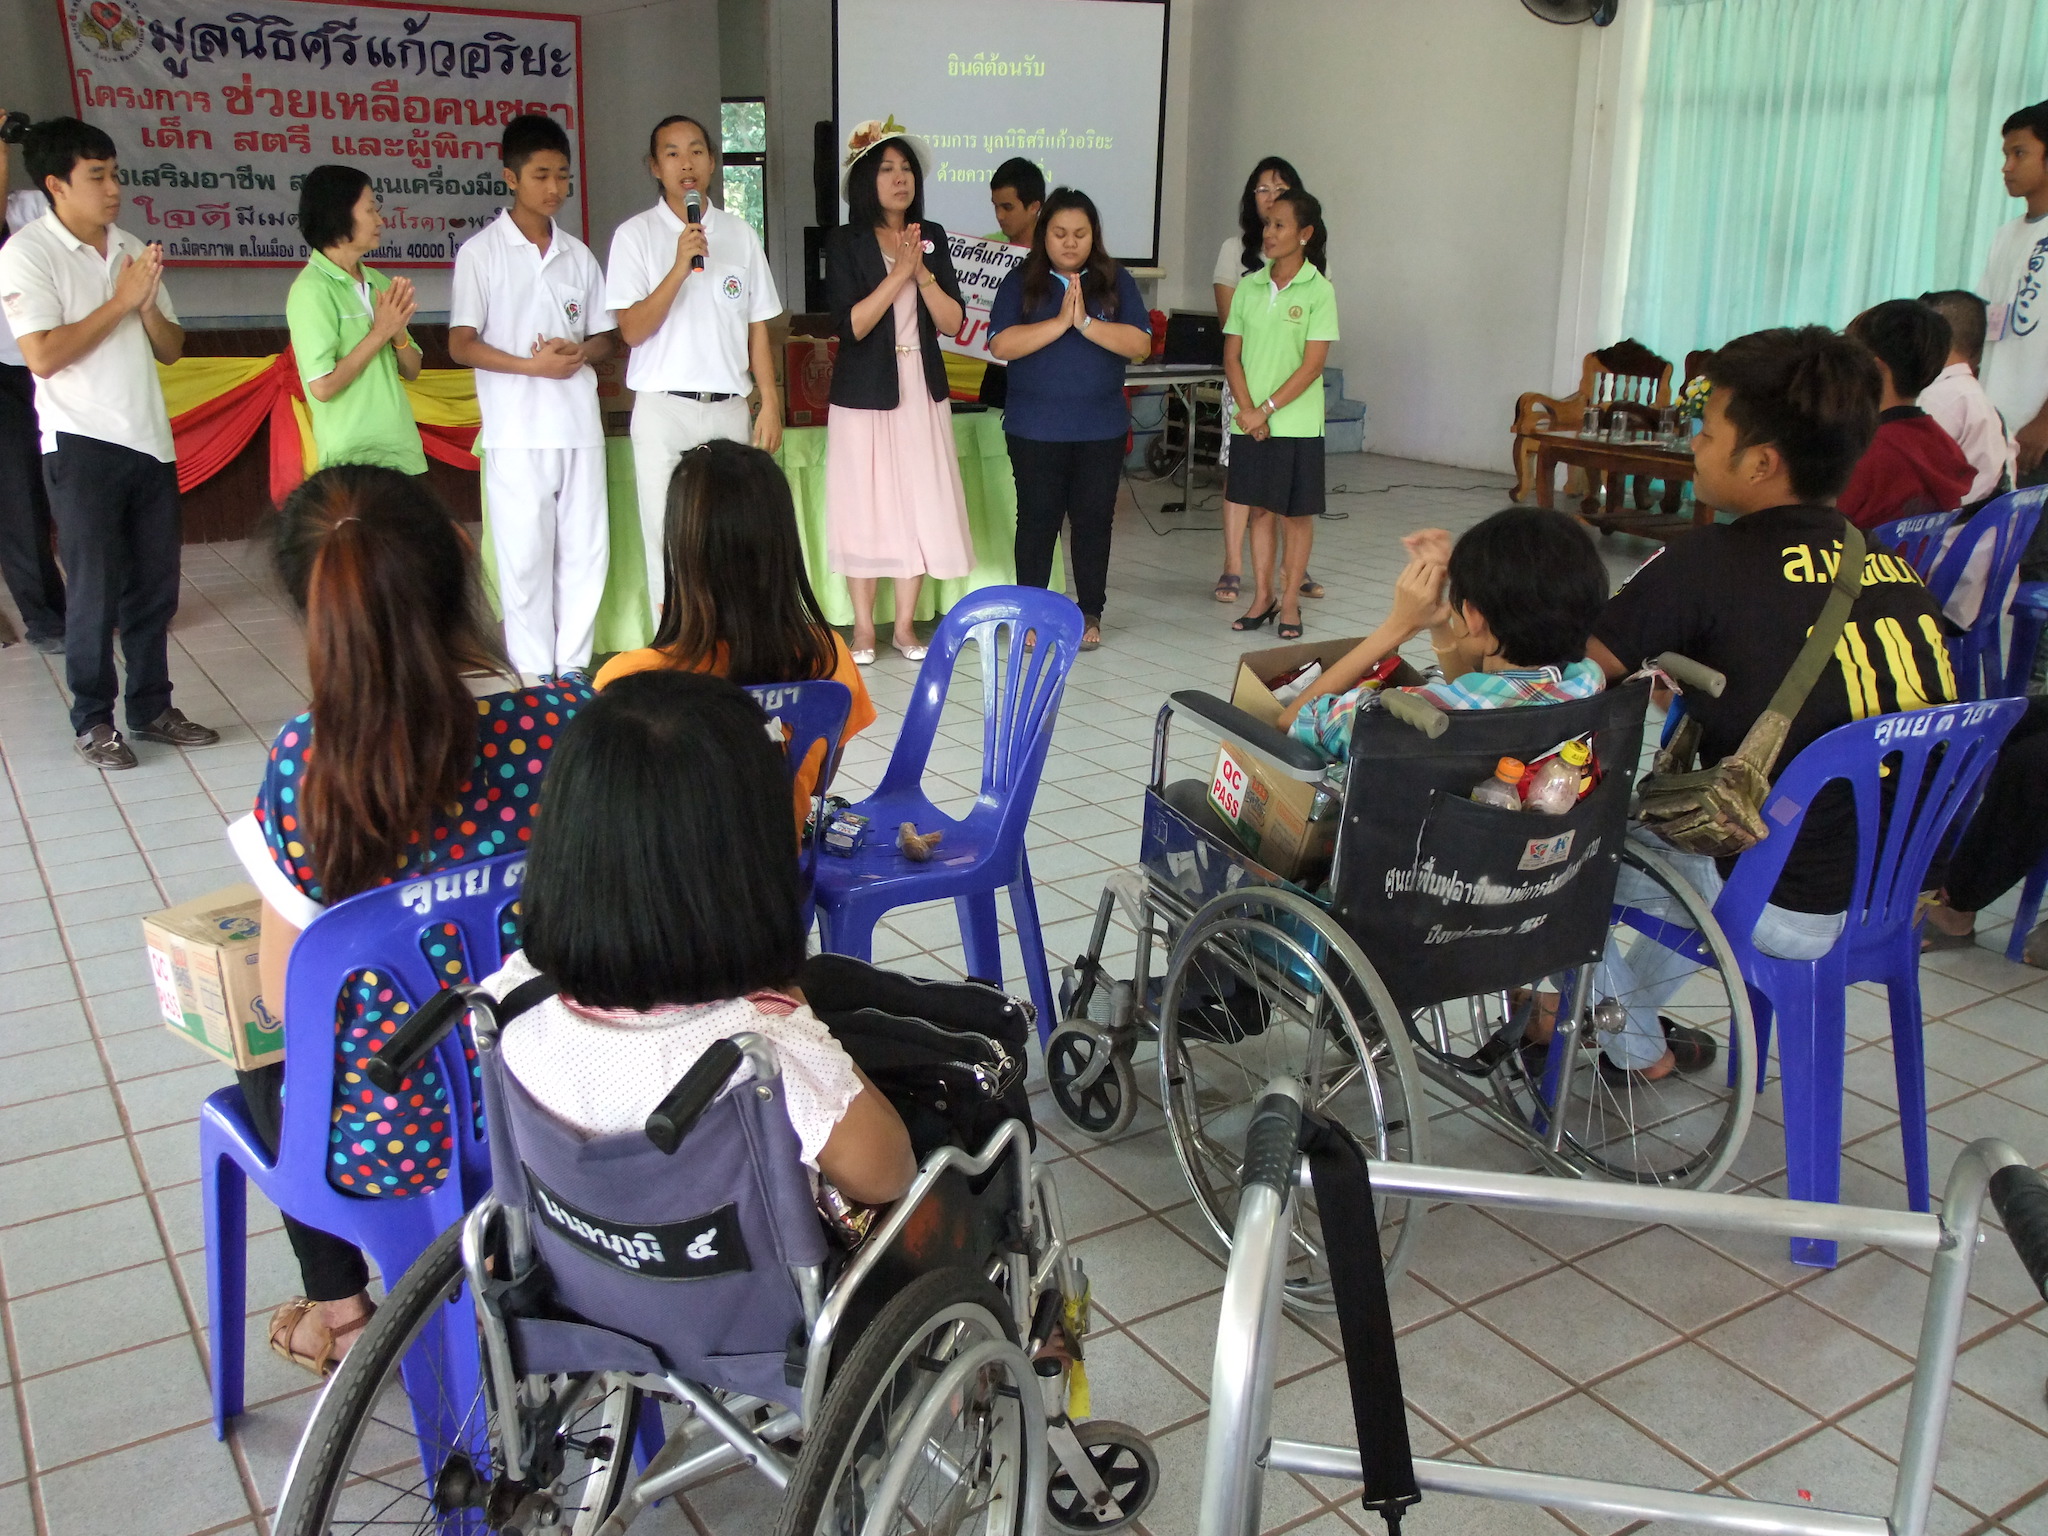 โครงการมอบทุนช่วยเหลือผู้พิการ วันที่ 15 ตุลาคม 2557         ณ  ศูนย์ฟื้นฟูอาชีพคนพิการจังหวัดหนองคาย อ.เมือง  จ.หนองคาย   